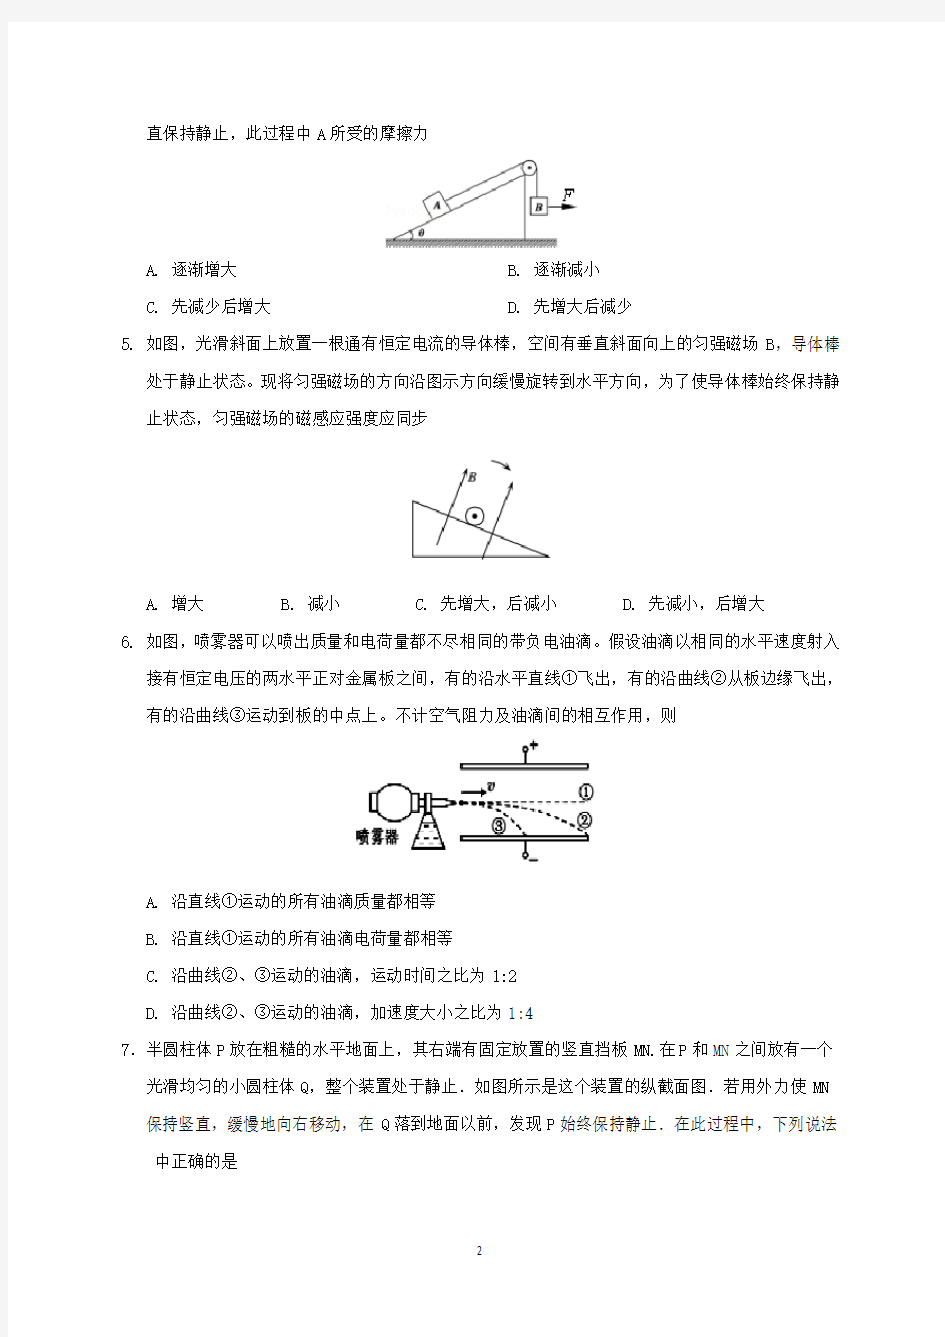 2020年江苏省高考物理模拟试题与答案(一)